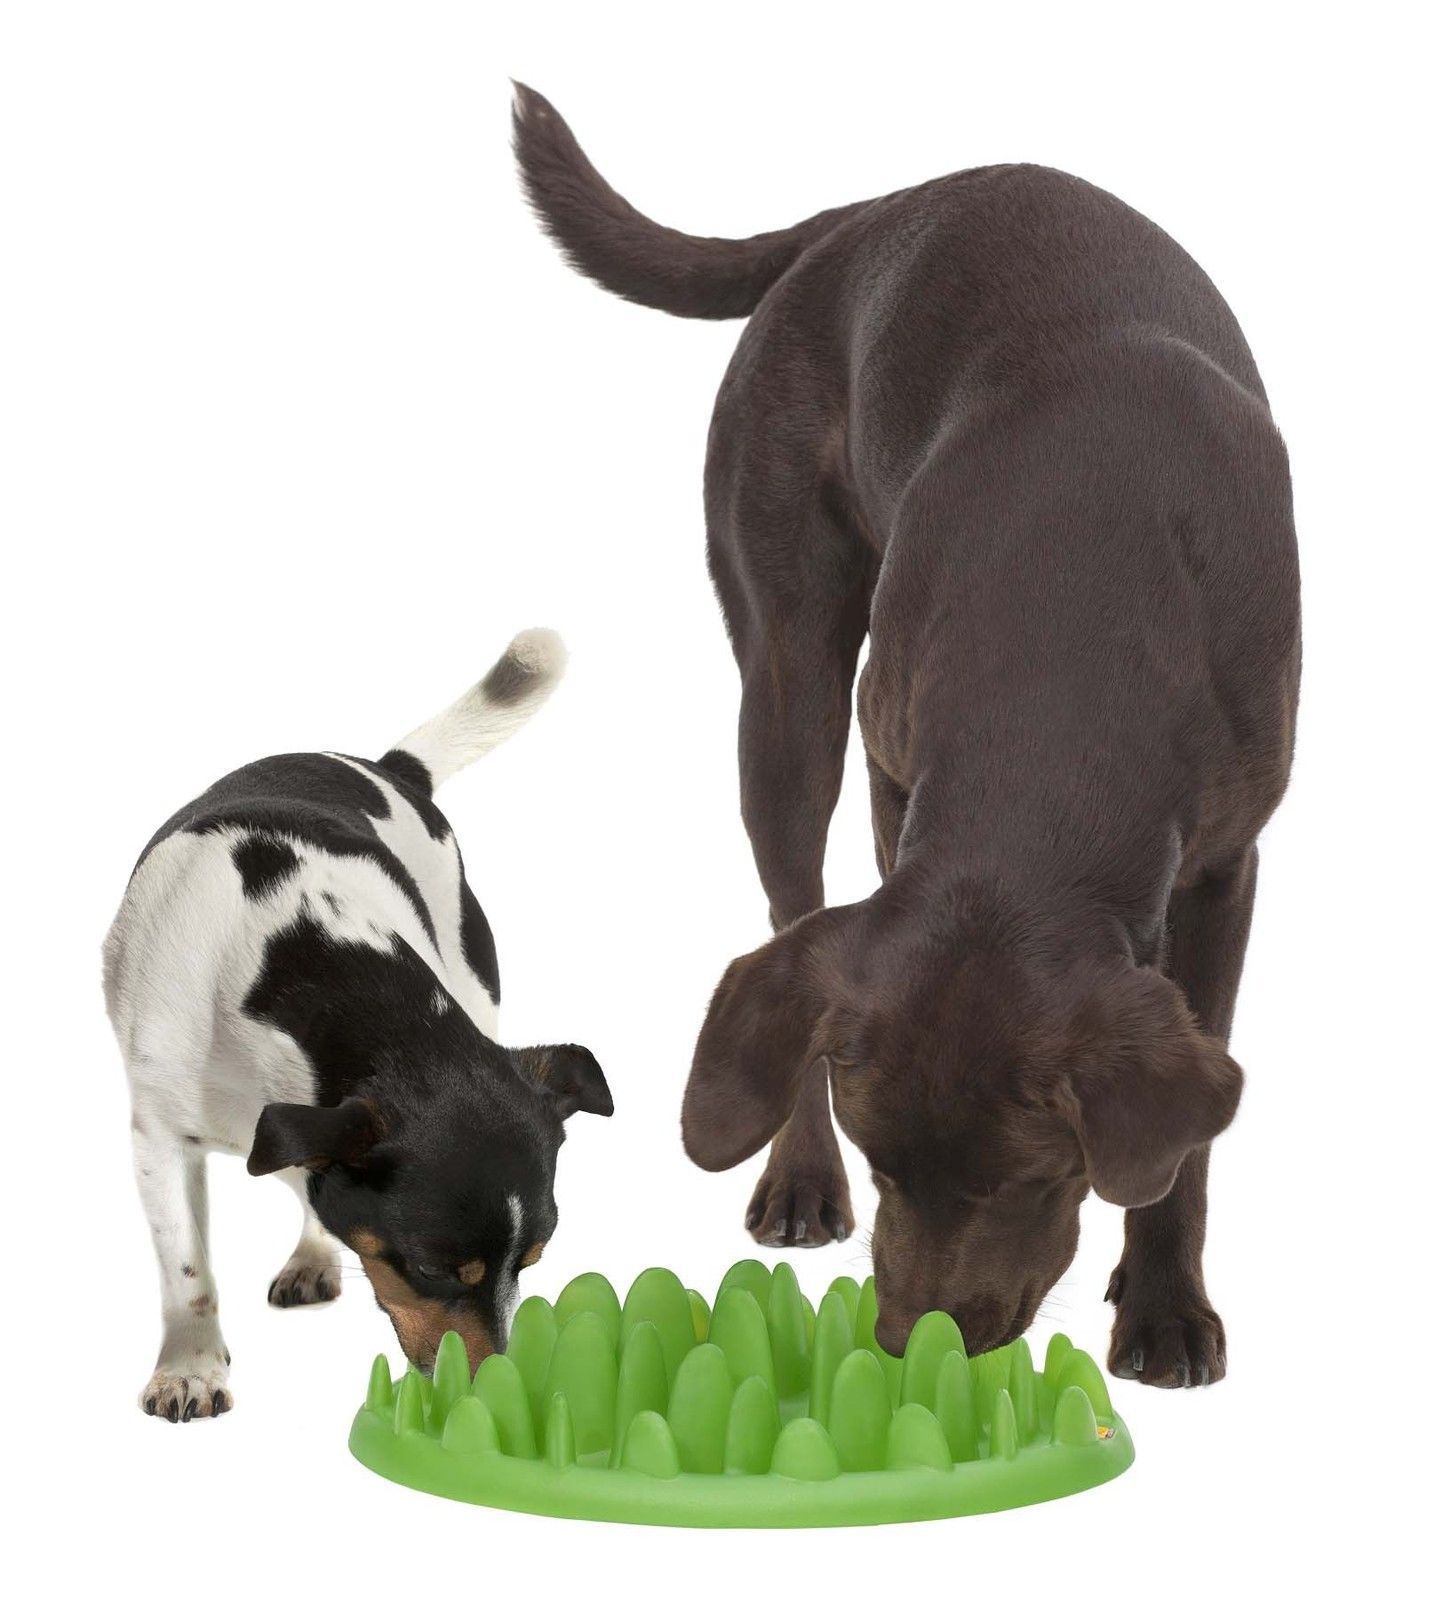 Karlie Northmate Green Mini Anti-Gluttony Feeding Dish for Dog Green 29 x 22.5 x 7 cm